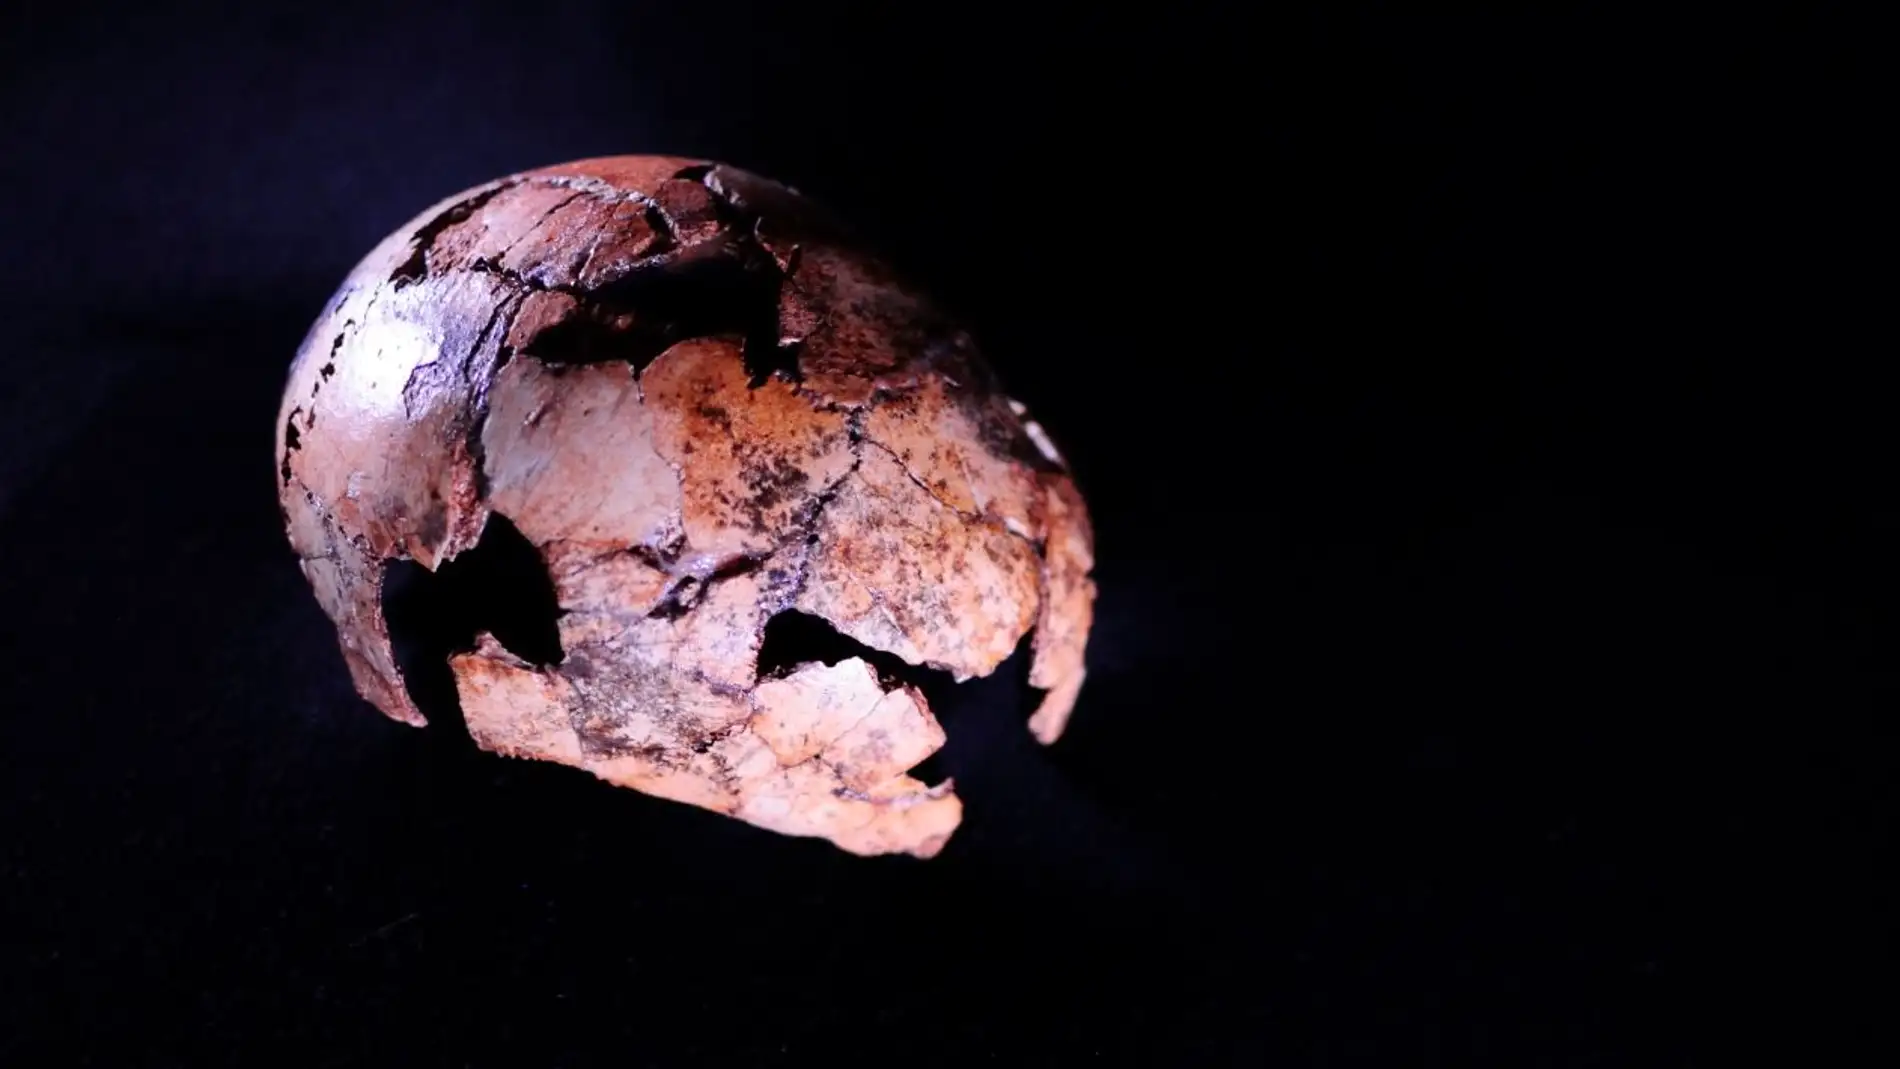 Cráneo de Homo erectus